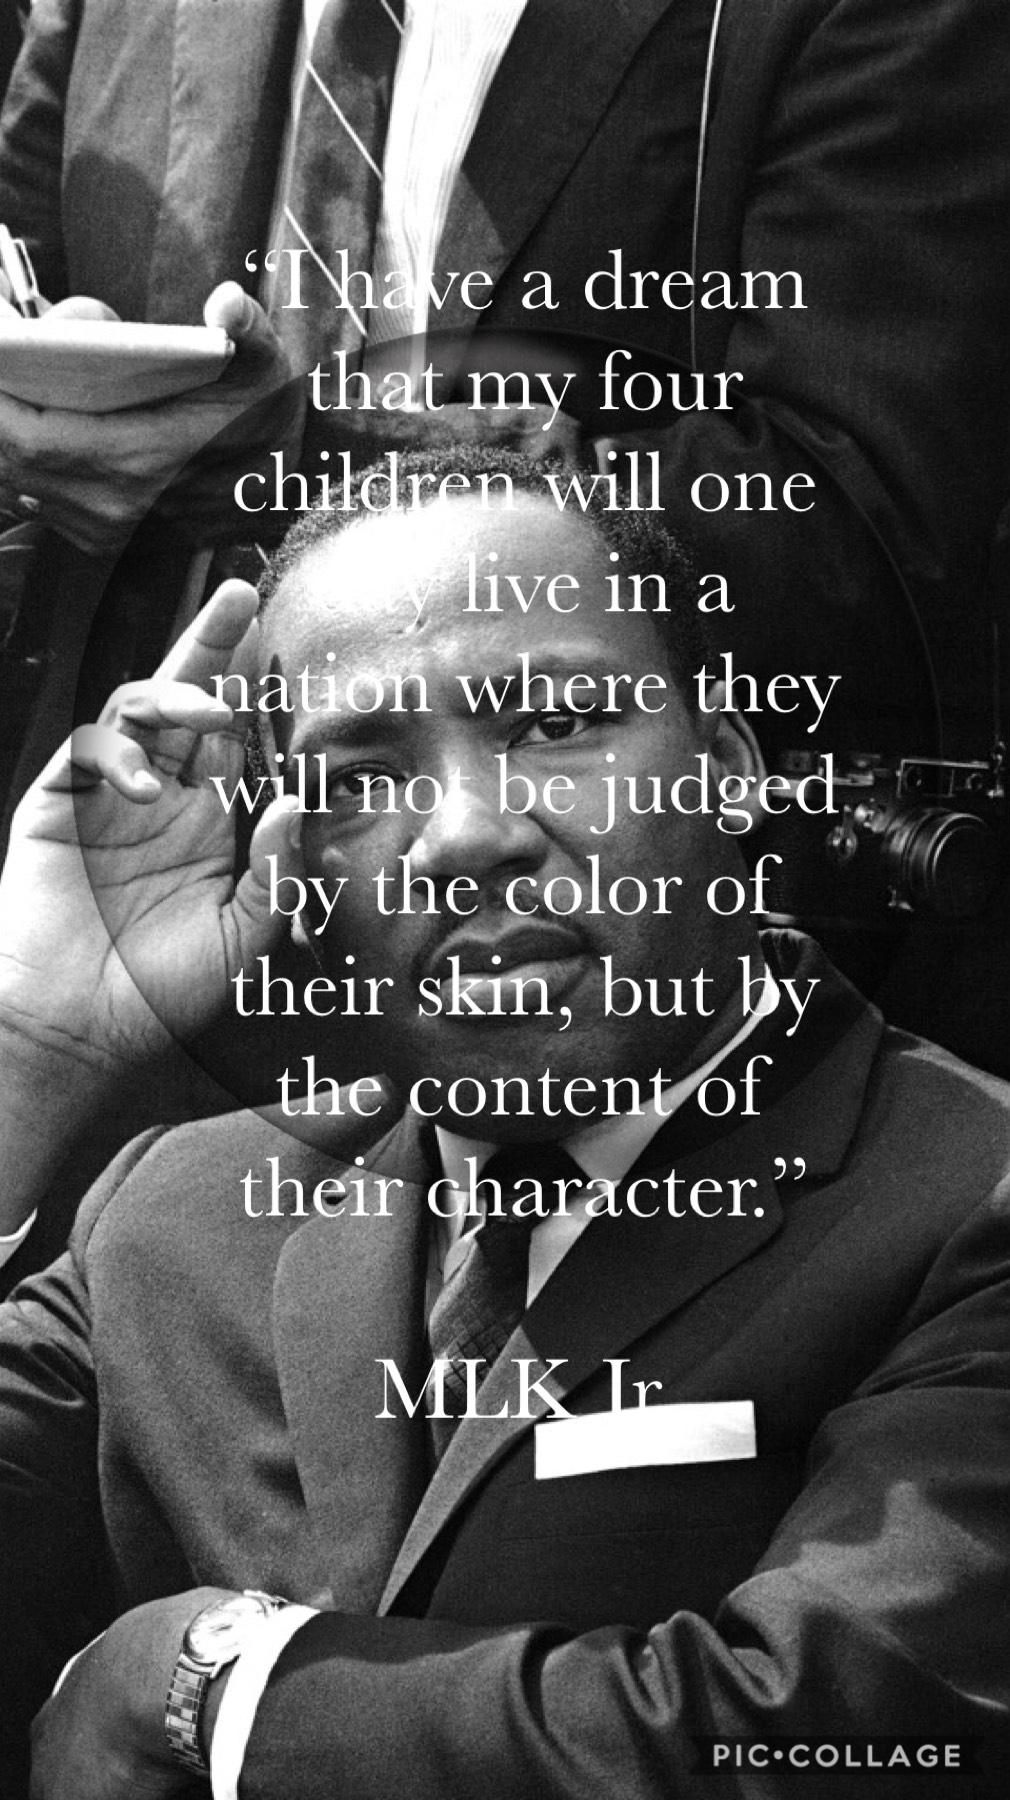 #MLKJr